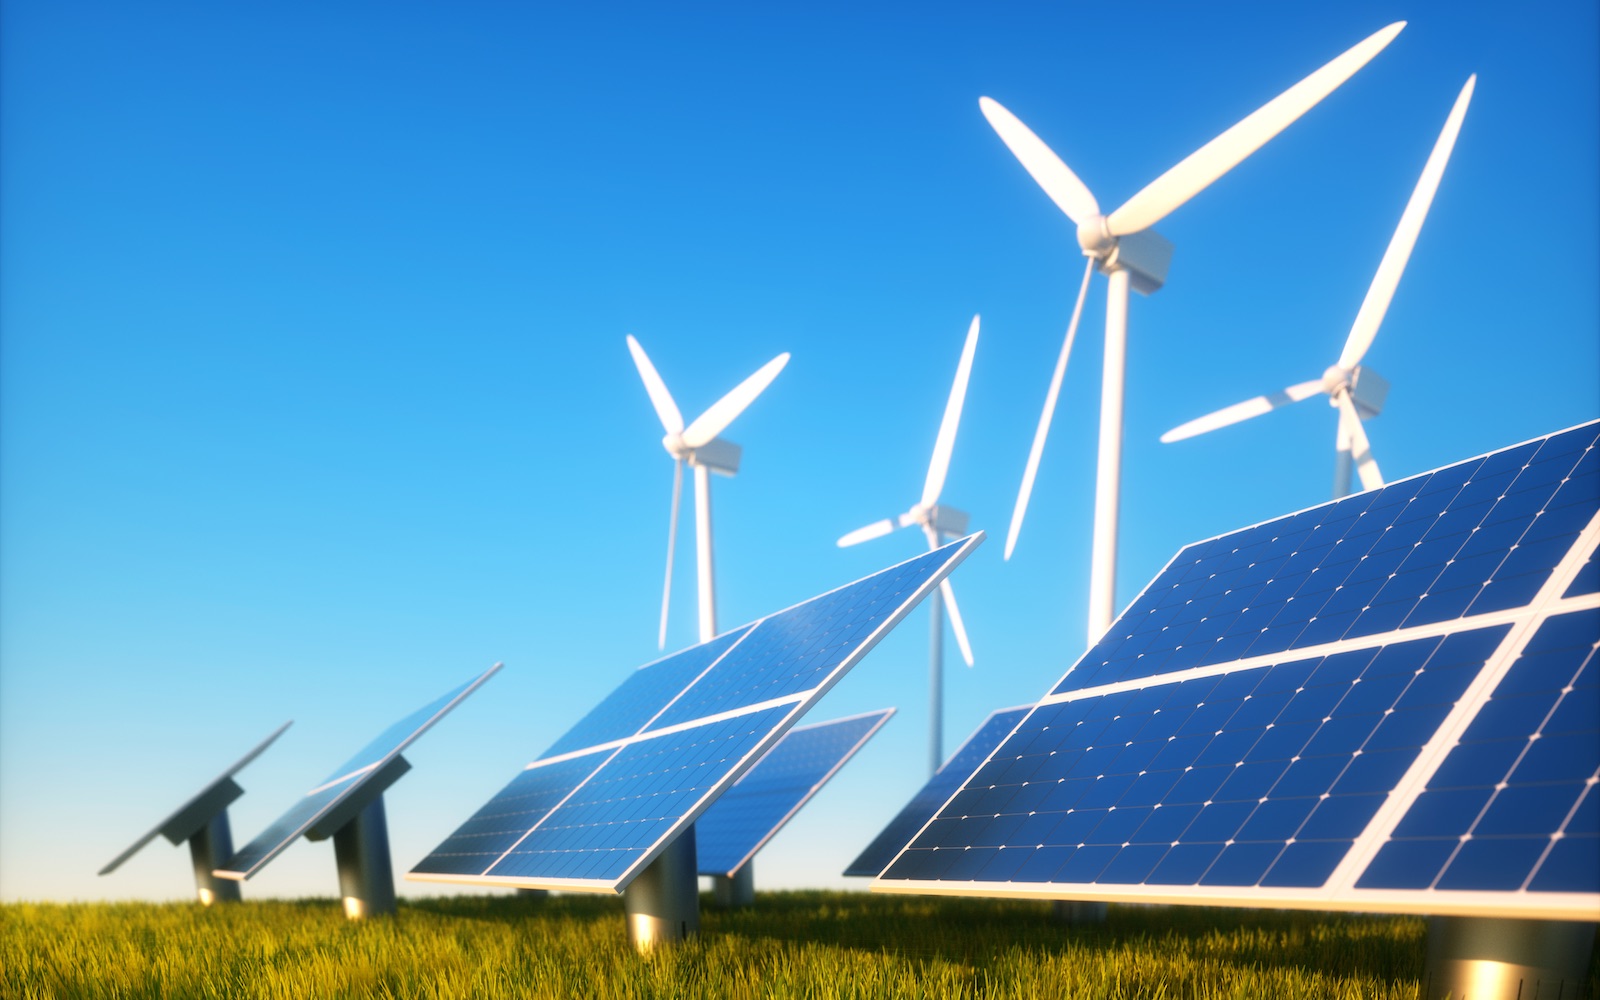 POWARE Industrial Automation marktsegment Energie, waaronder alternatieve energieopwekking met zonnepanelen en windmolens